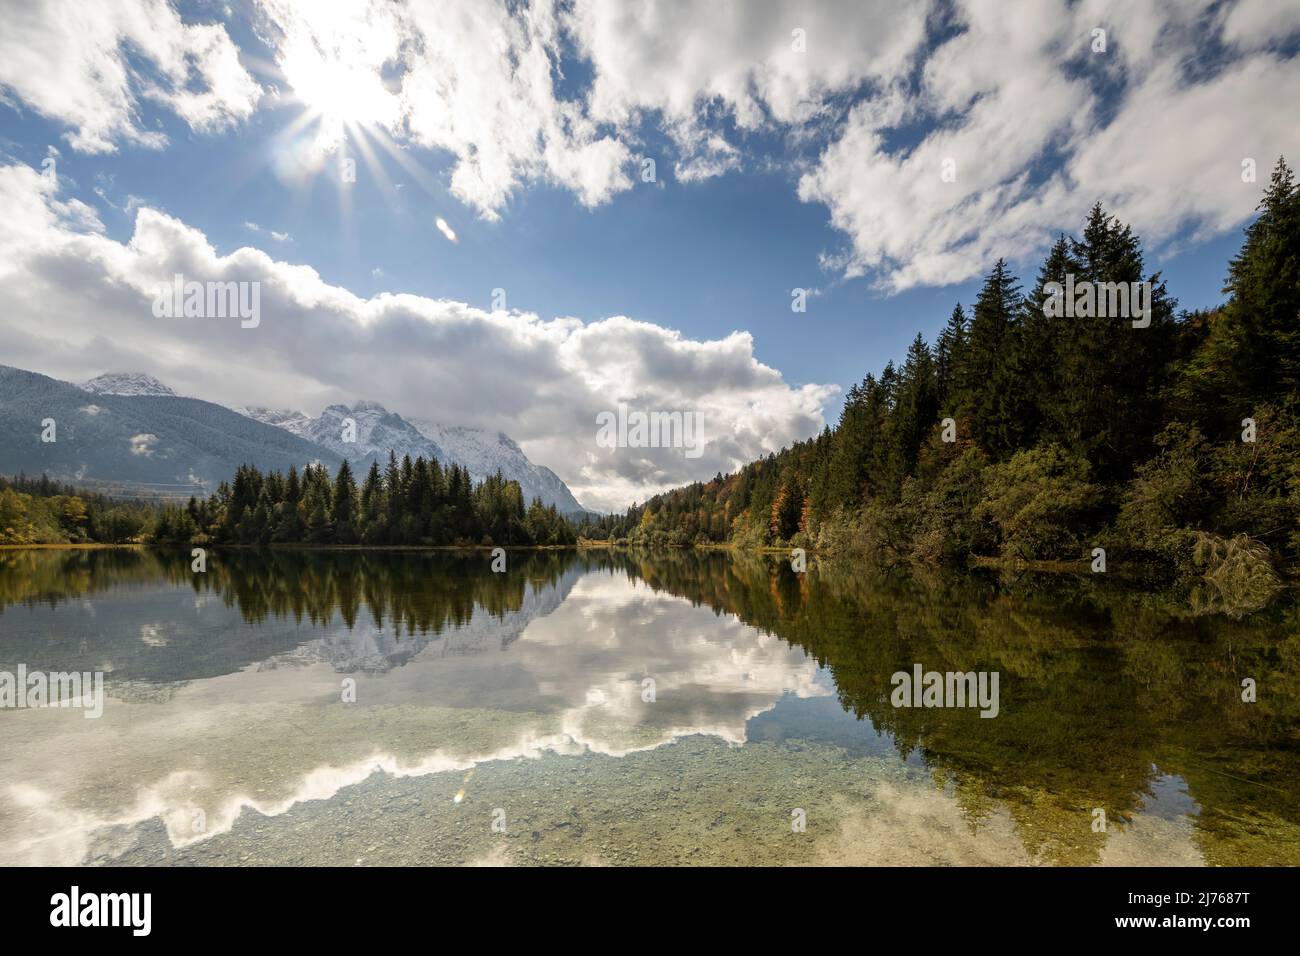 Stausee krün im Herbst mit erstem Schnee am Karwendel. Berge und Wolken spiegeln sich im klaren Wasser des Sees, während sich am Himmel ein Sonnenstern befindet. Stockfoto